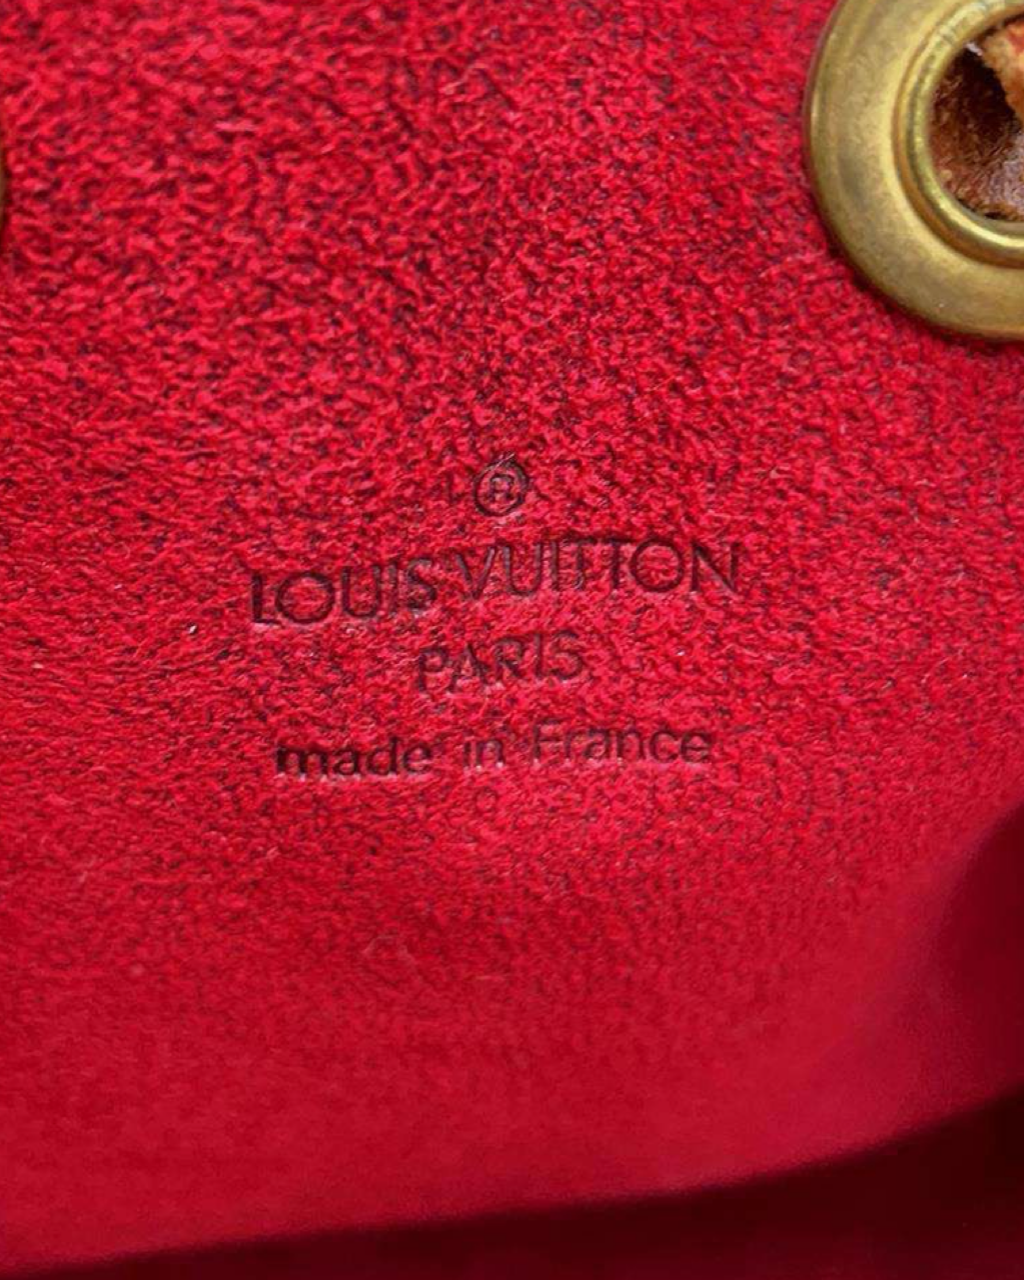 Limited Edition Louis Vuitton Noé Mini Bag